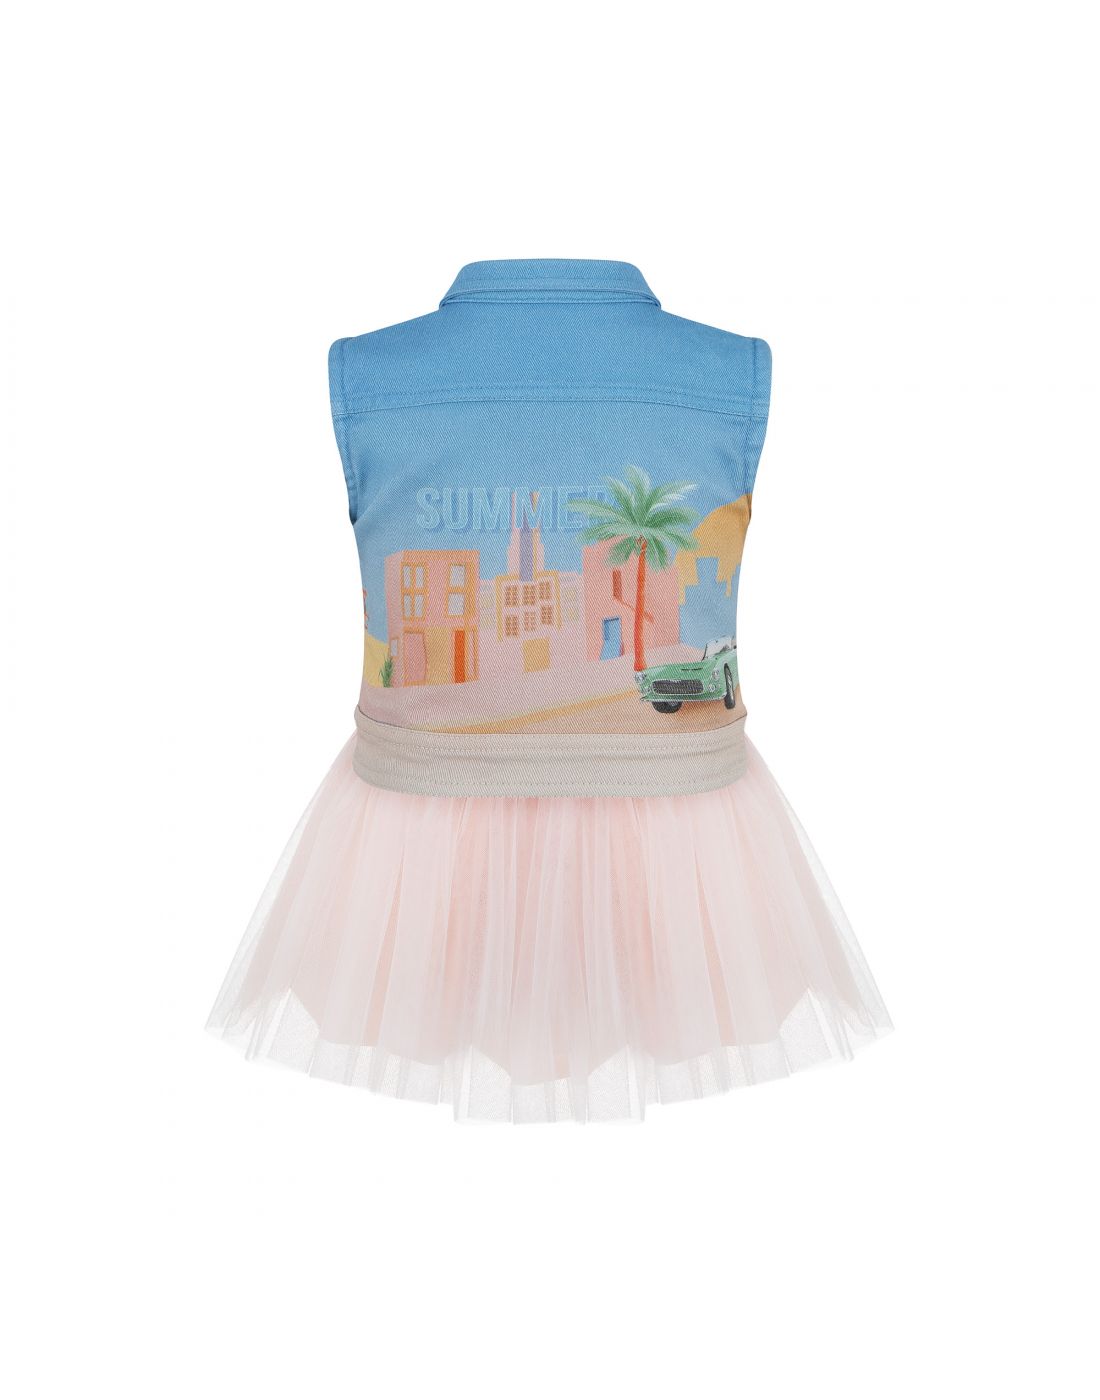 Παιδικό Φόρεμα με Γιλέκο Lapin House